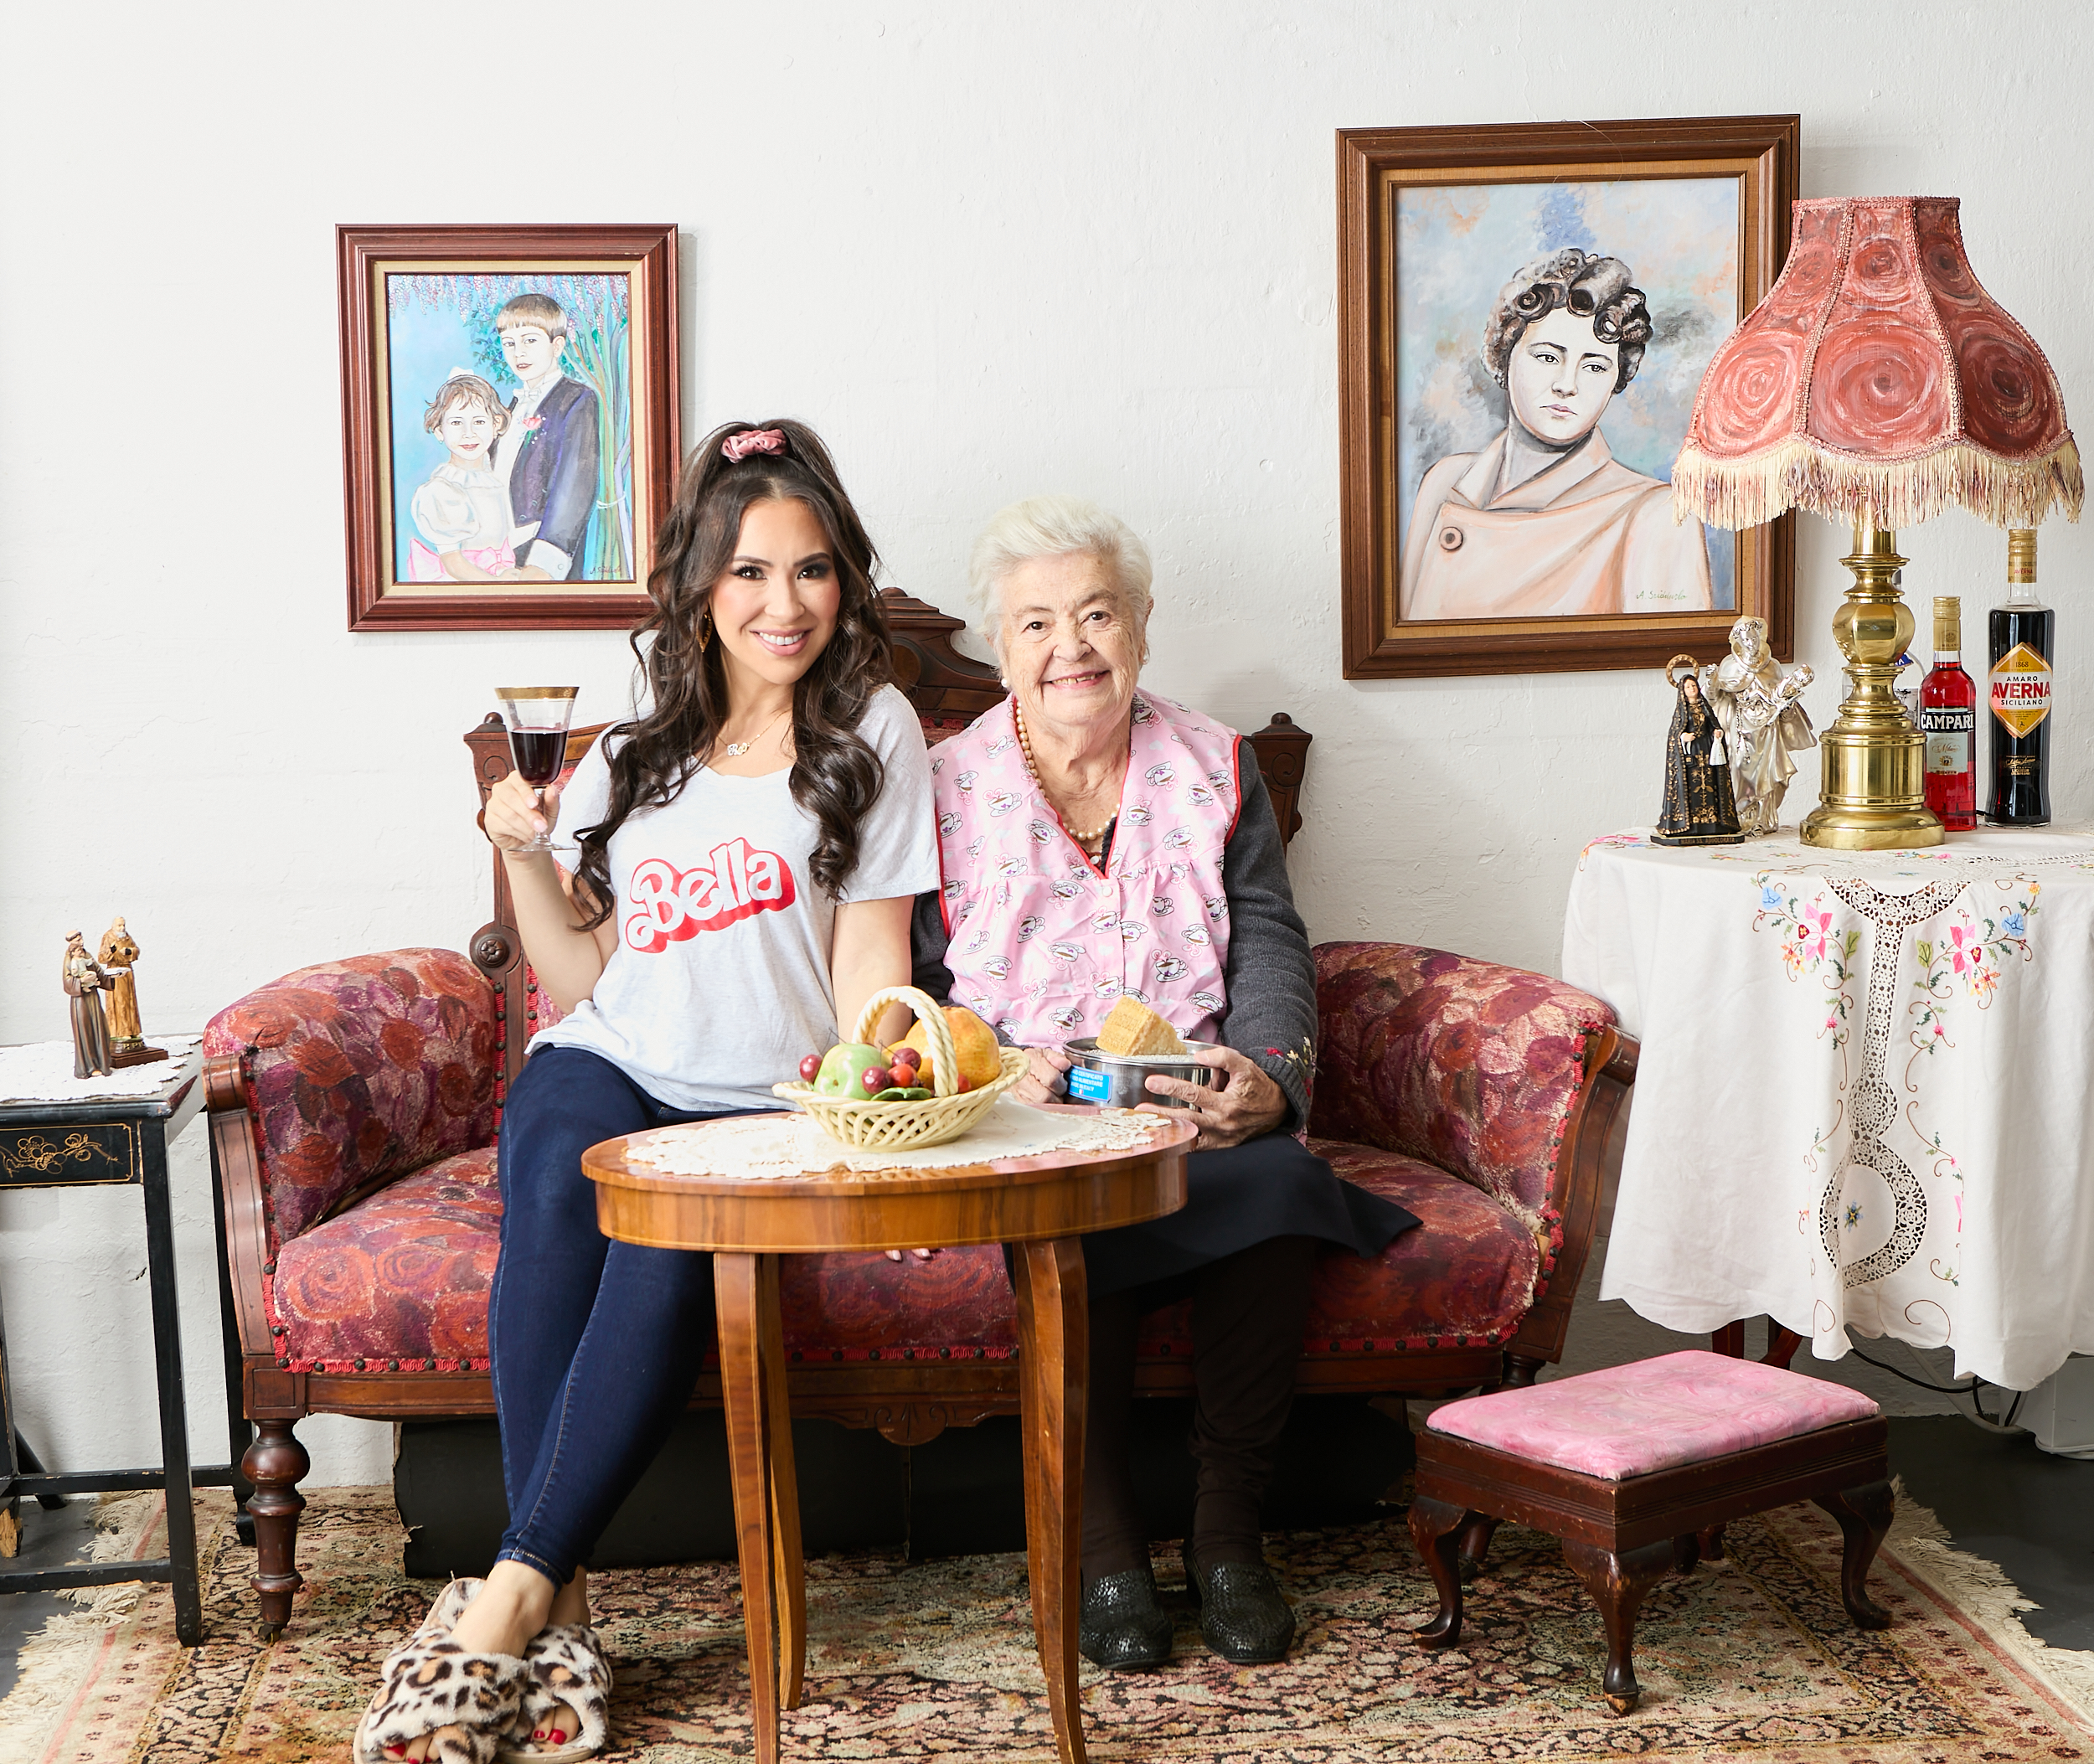 Rossella Rago and her nonna.